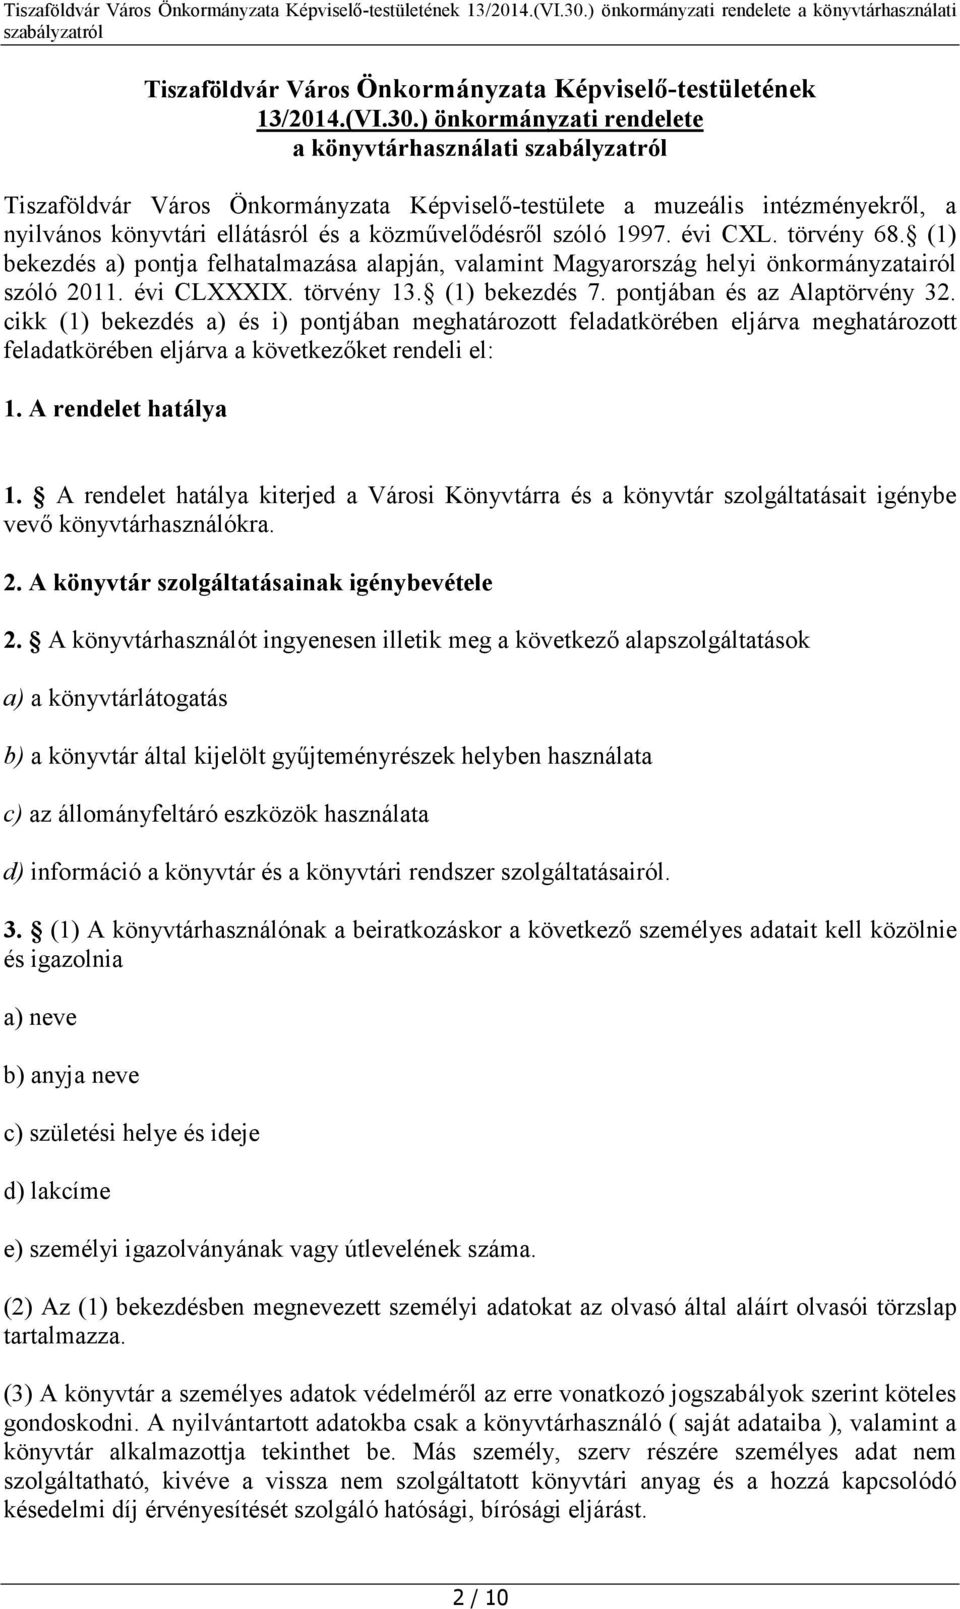 évi CXL. törvény 68. (1) bekezdés a) pontja felhatalmazása alapján, valamint Magyarország helyi önkormányzatairól szóló 2011. évi CLXXXIX. törvény 13. (1) bekezdés 7. pontjában és az Alaptörvény 32.